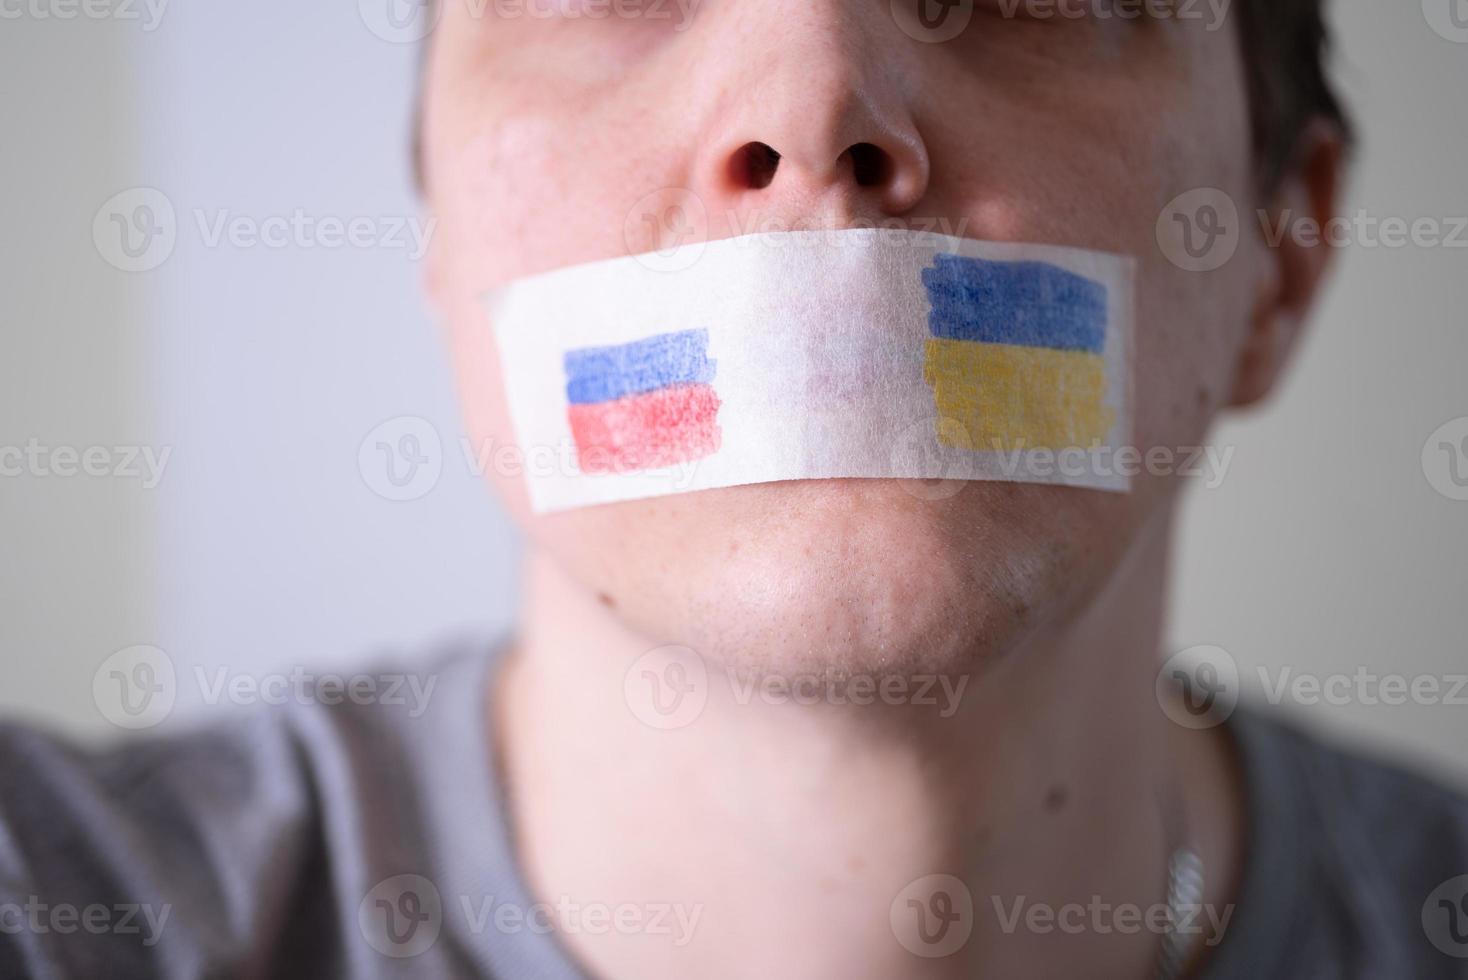 Met plakband afgeplakte mond met de vlag van rusland en oekraïne, proberend te zeggen. foto